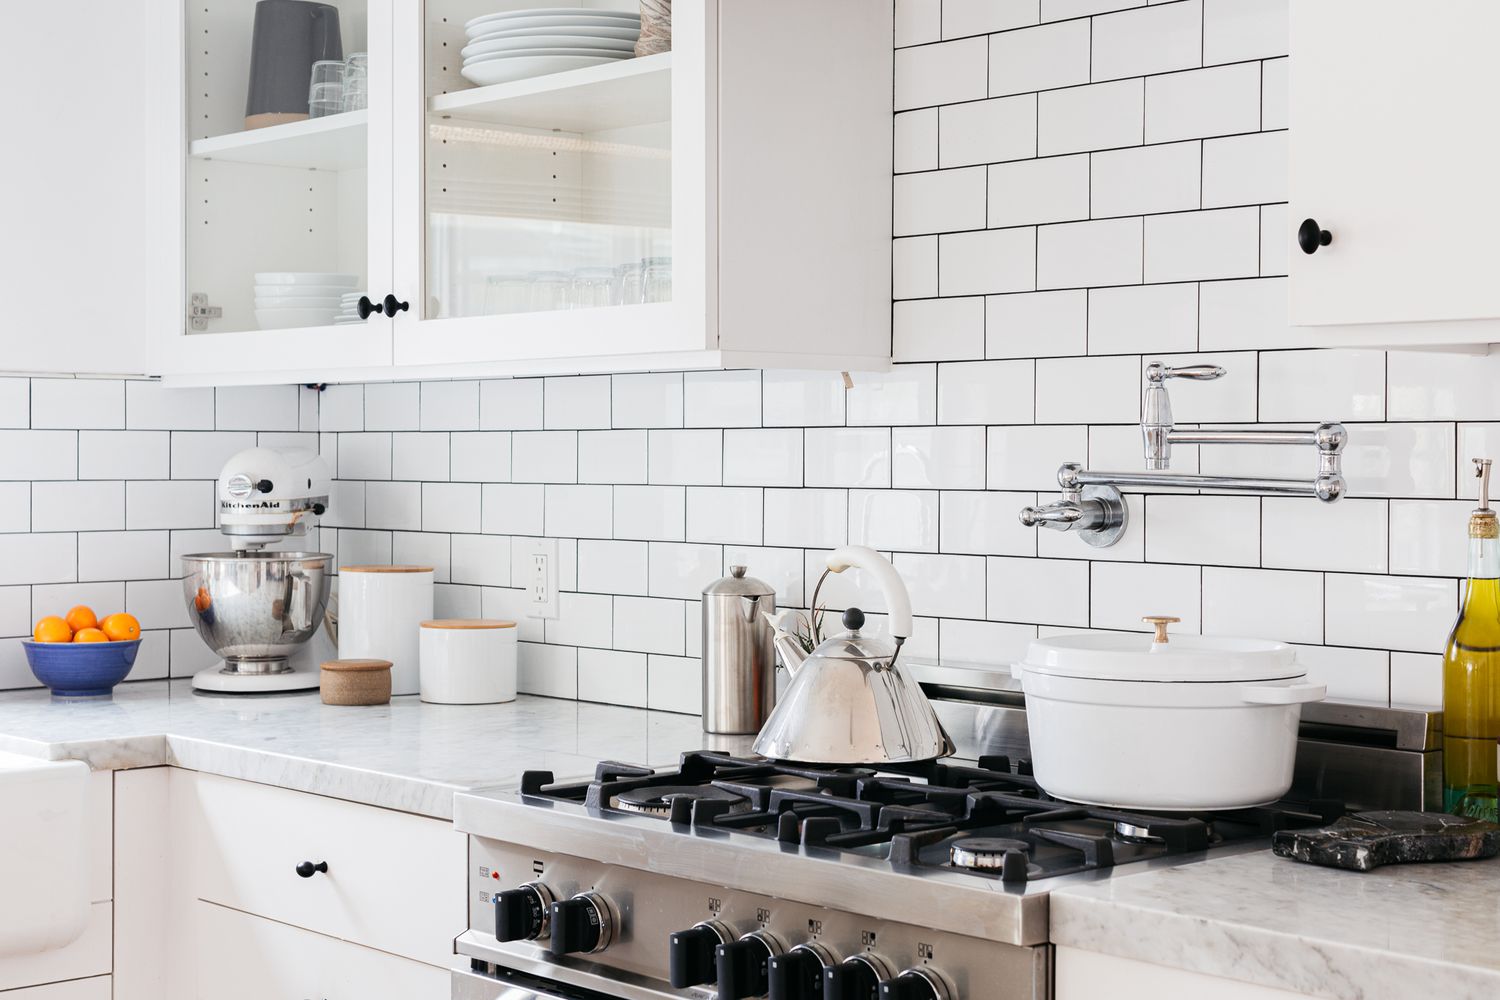 Backsplash de tijolos brancos em uma cozinha moderna toda branca